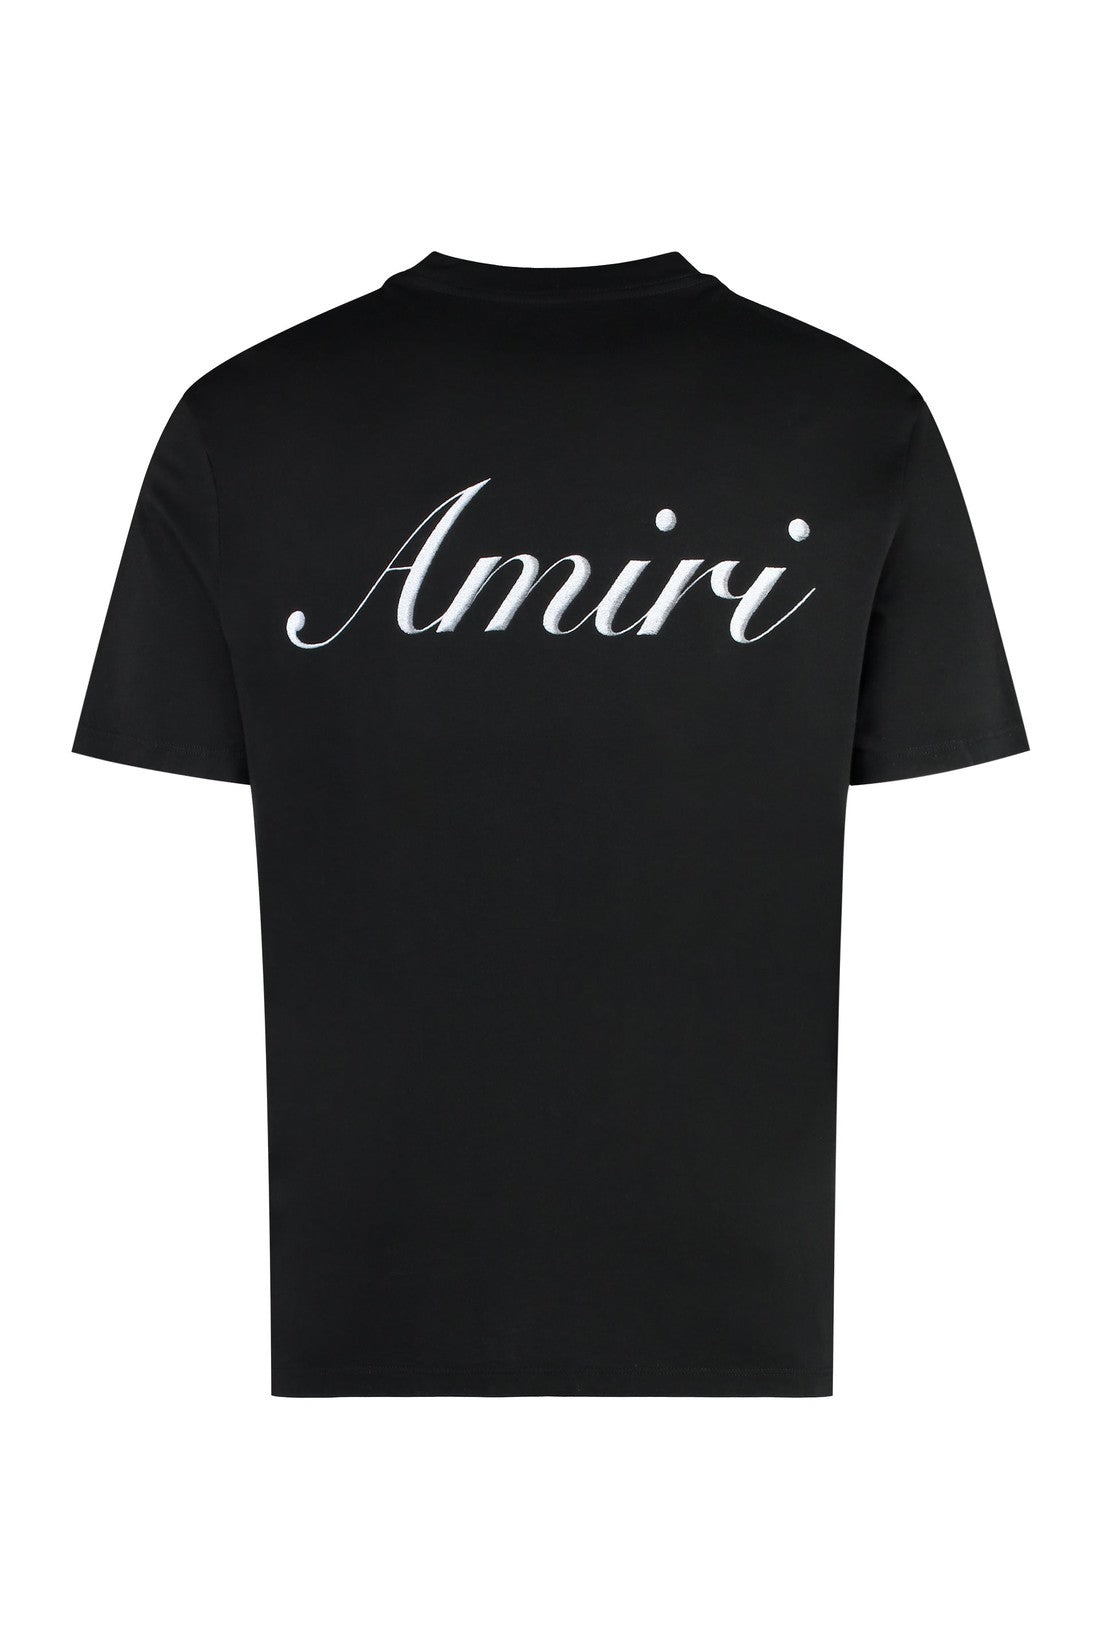 AMIRI-OUTLET-SALE-Cotton crew-neck T-shirt-ARCHIVIST